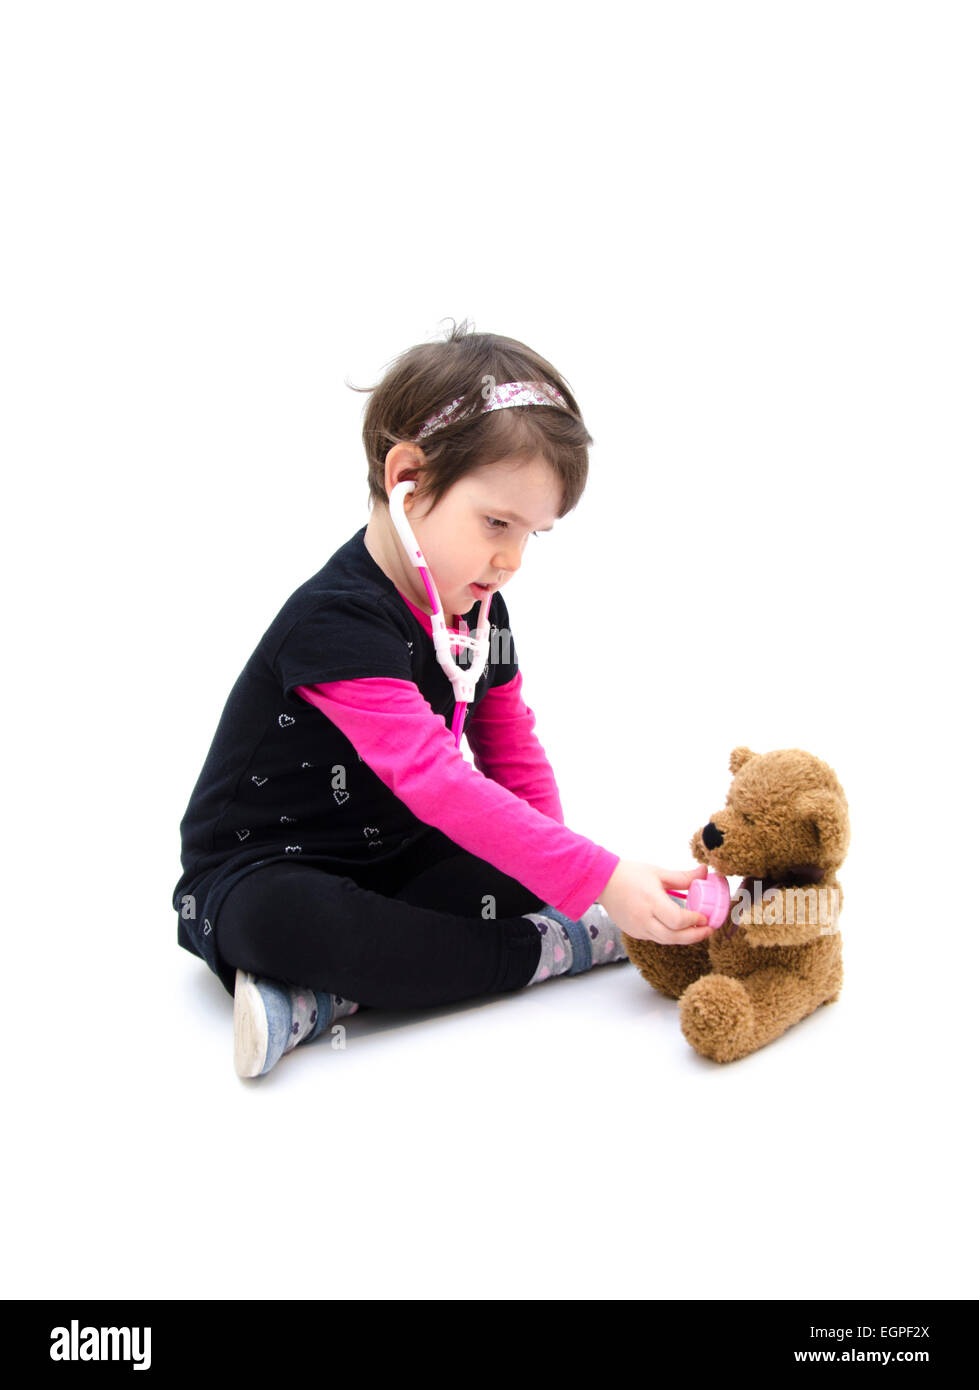 Piccola ragazza medico gioca con Teddy bear isolati su sfondo bianco Foto Stock